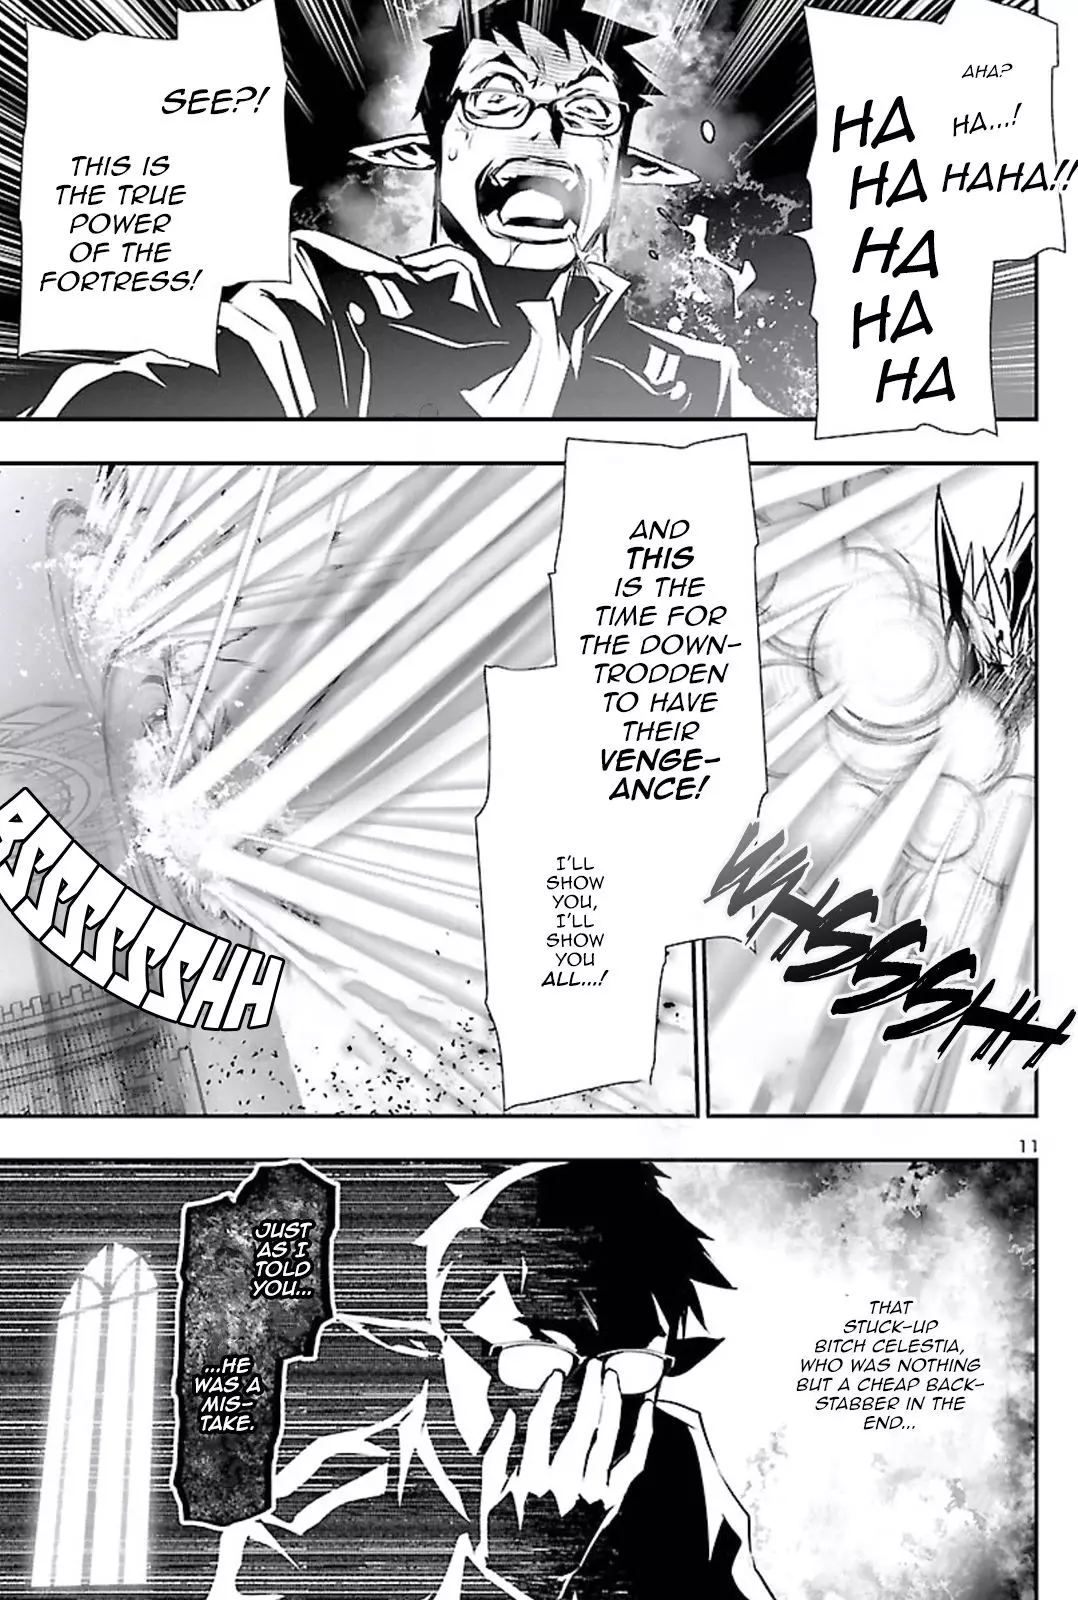 Shinju no Nectar - 47 page 11